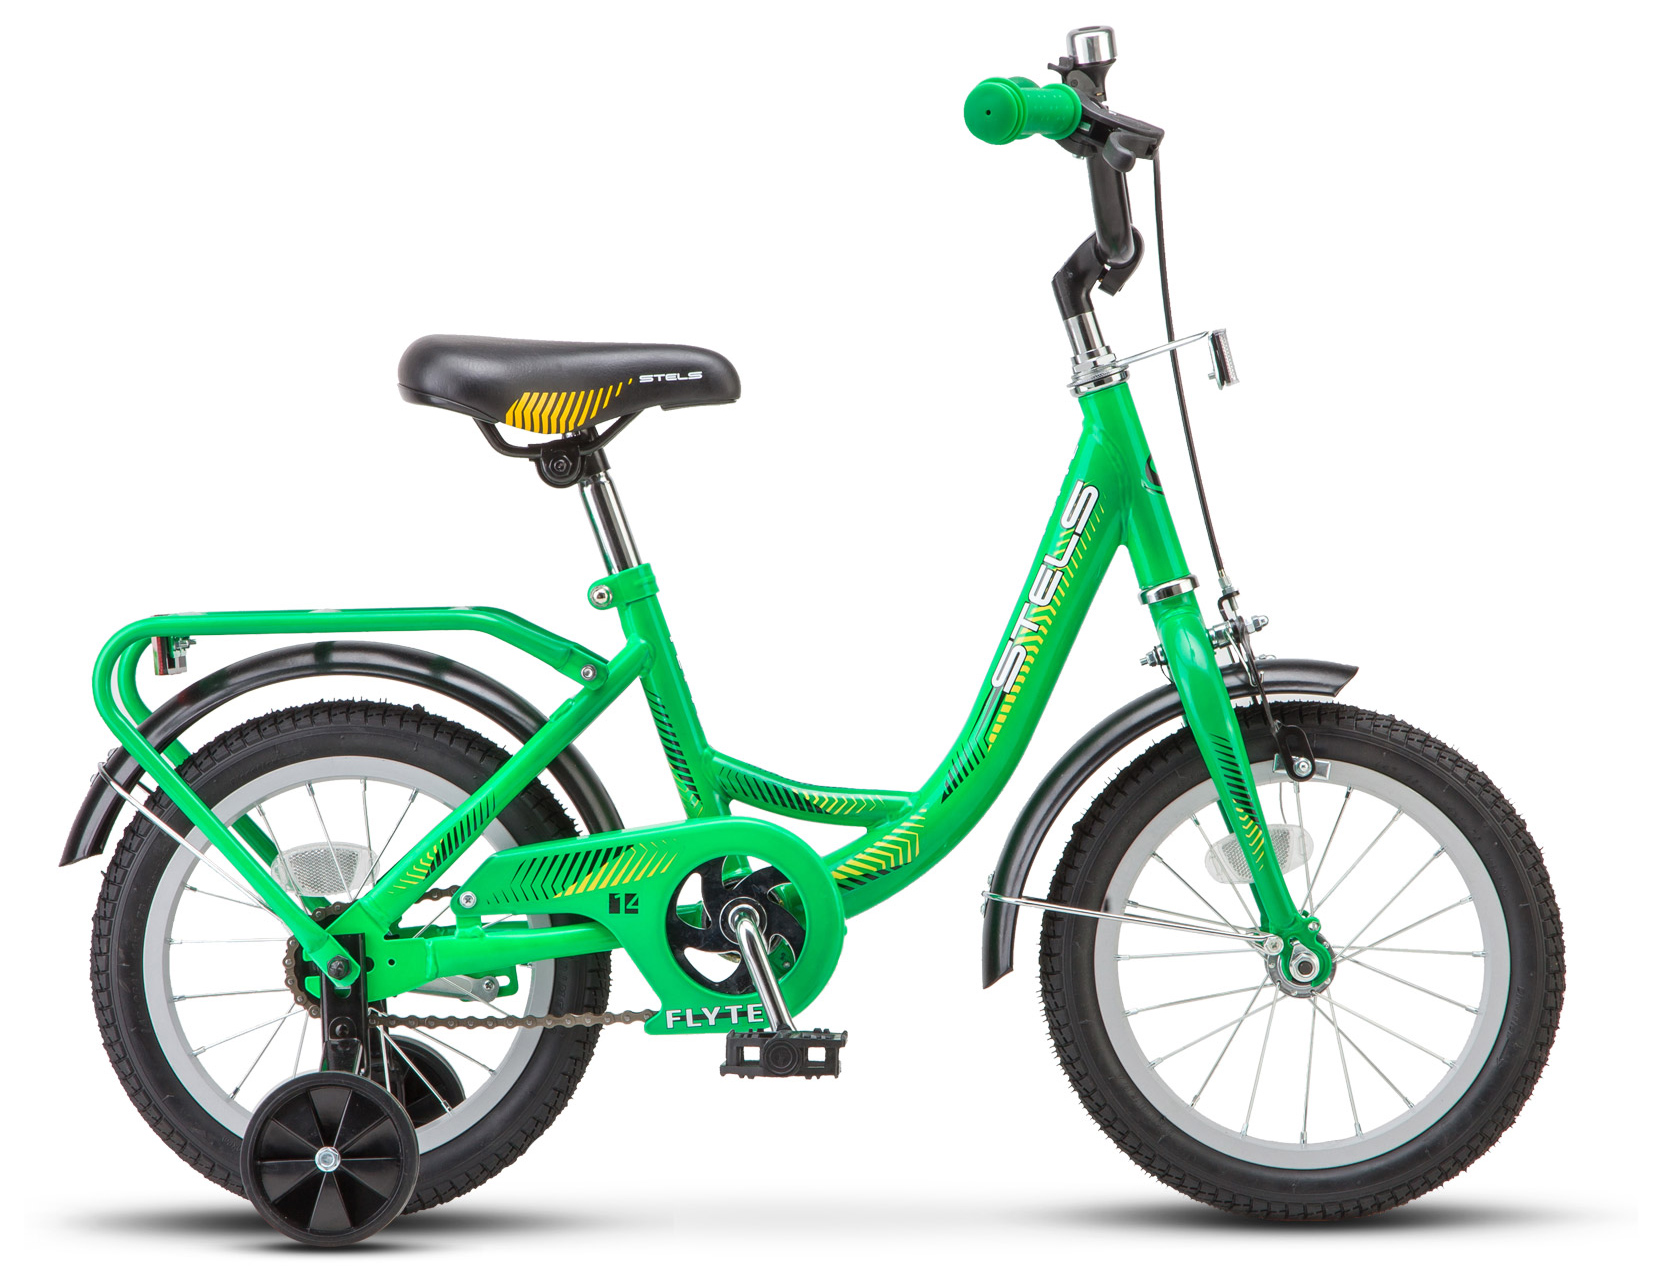  Велосипед трехколесный детский велосипед Stels Flyte 14 (Z011) 2019